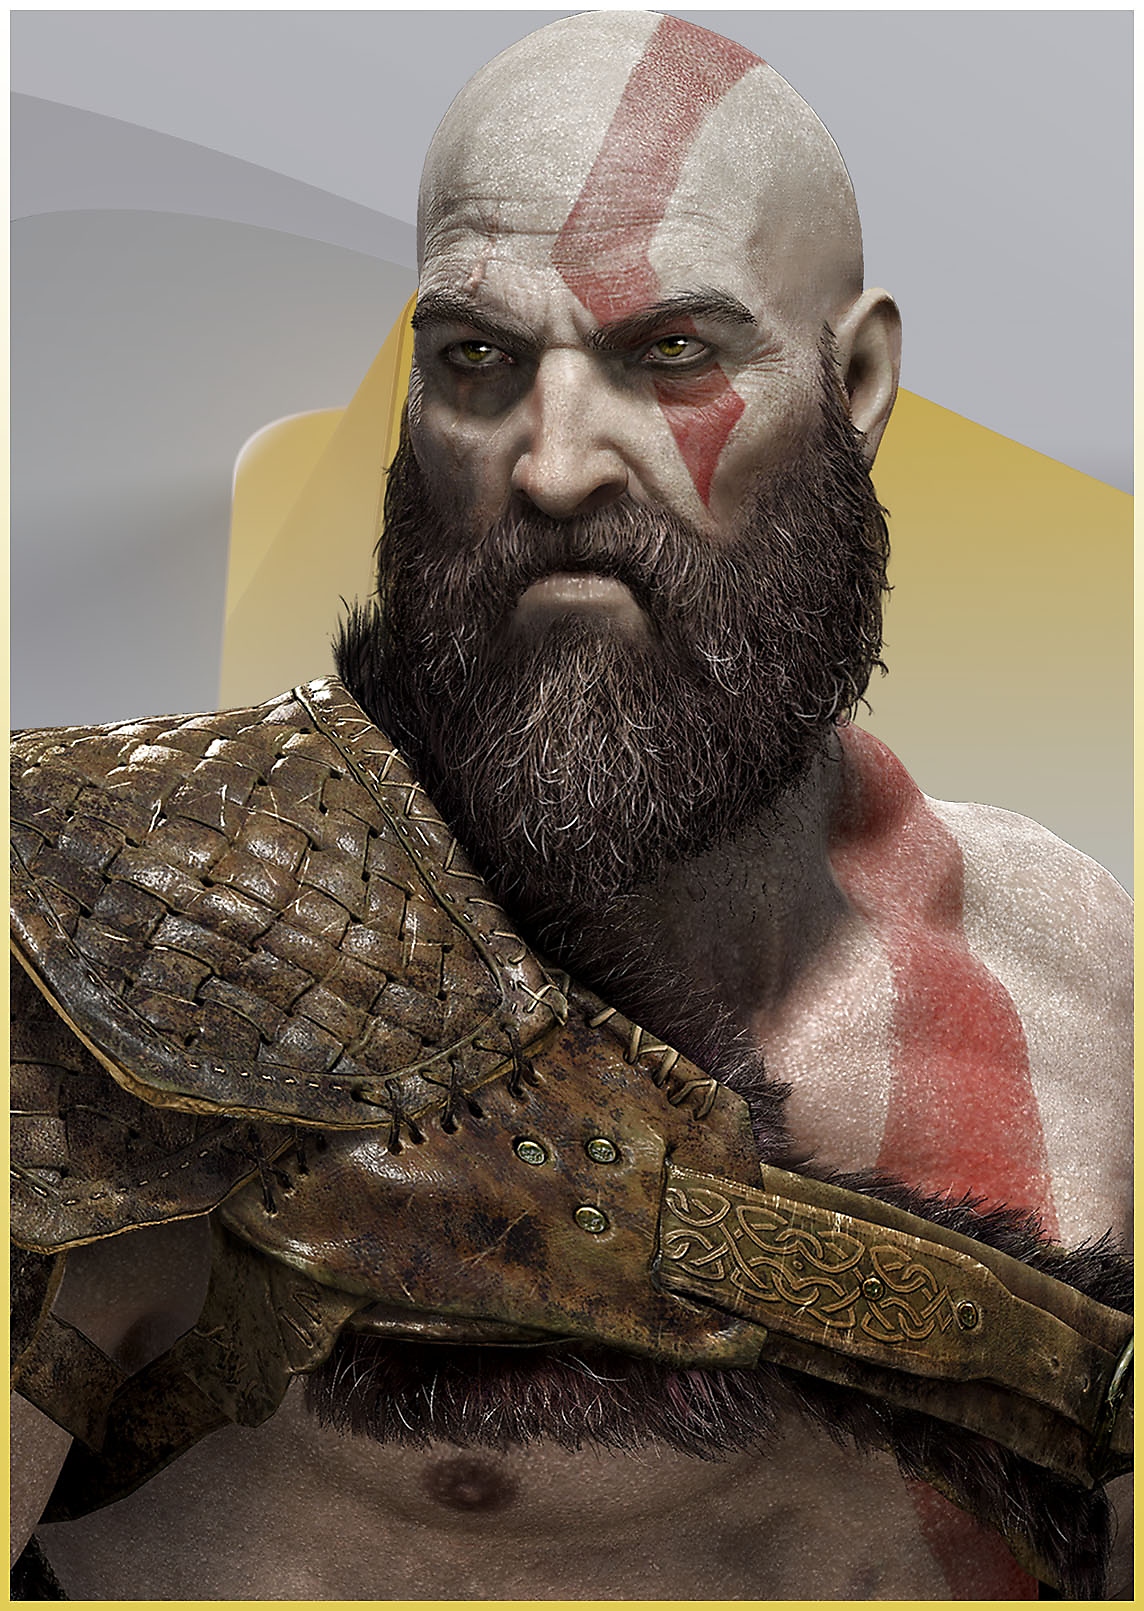 Kratos aus God of War mit wütendem Gesichtsausdruck